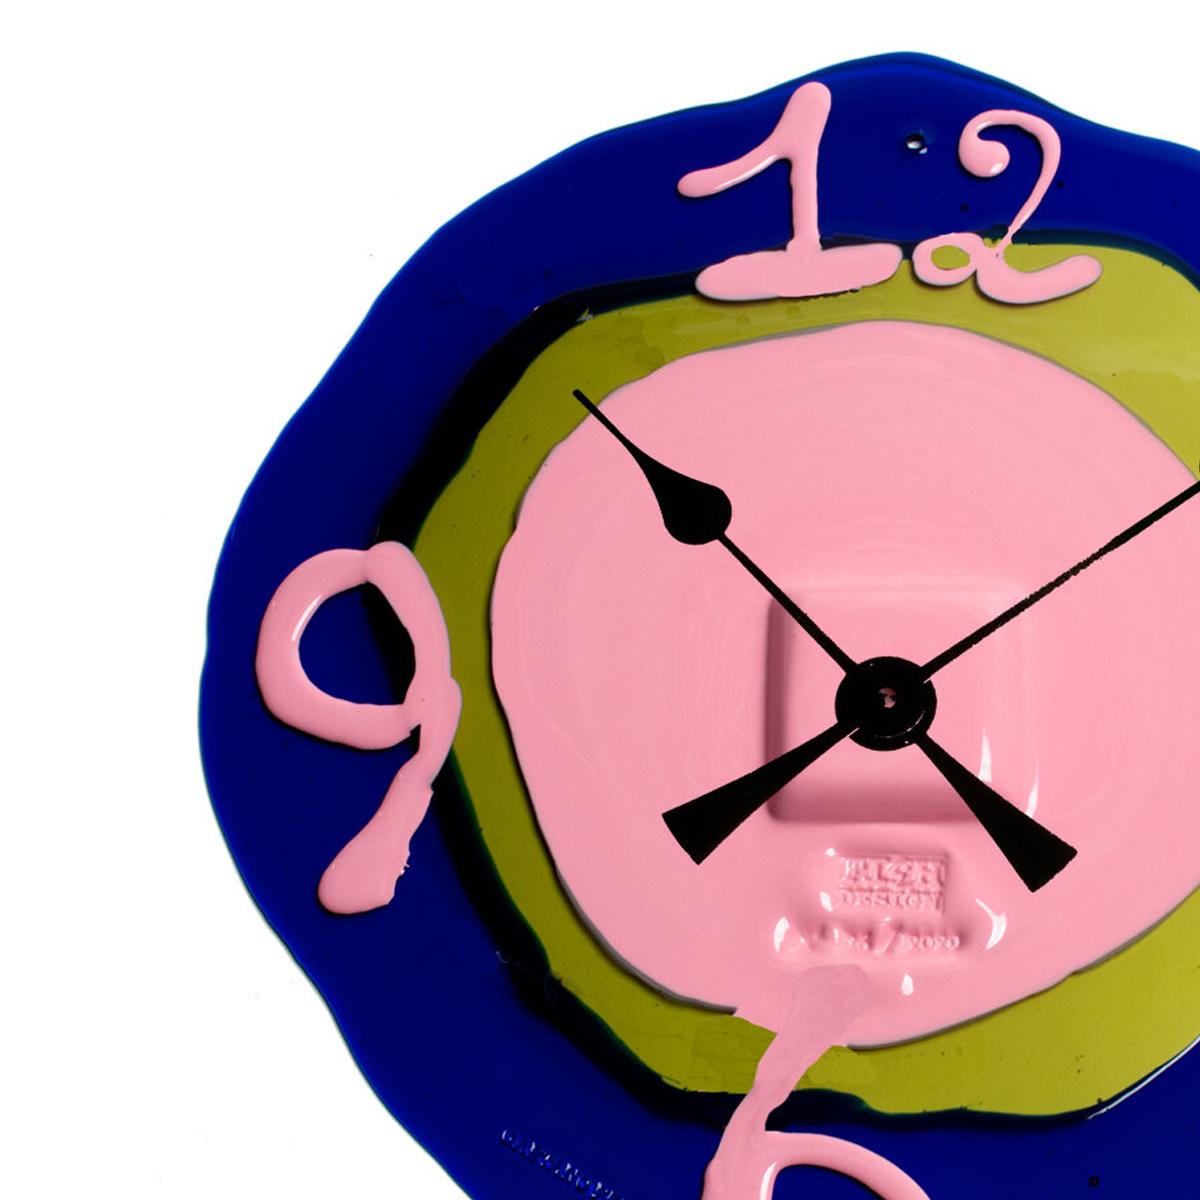 Horloge Watch Me, bleu clair Klein, vert bouteille, rose mat

Horloge en résine dure conçue par Gaetano Pesce en 1995 pour la collection Fish Design.

Mesures : XL - ø 64cm

Autres tailles disponibles.

Couleurs : bleu clair Klein, vert